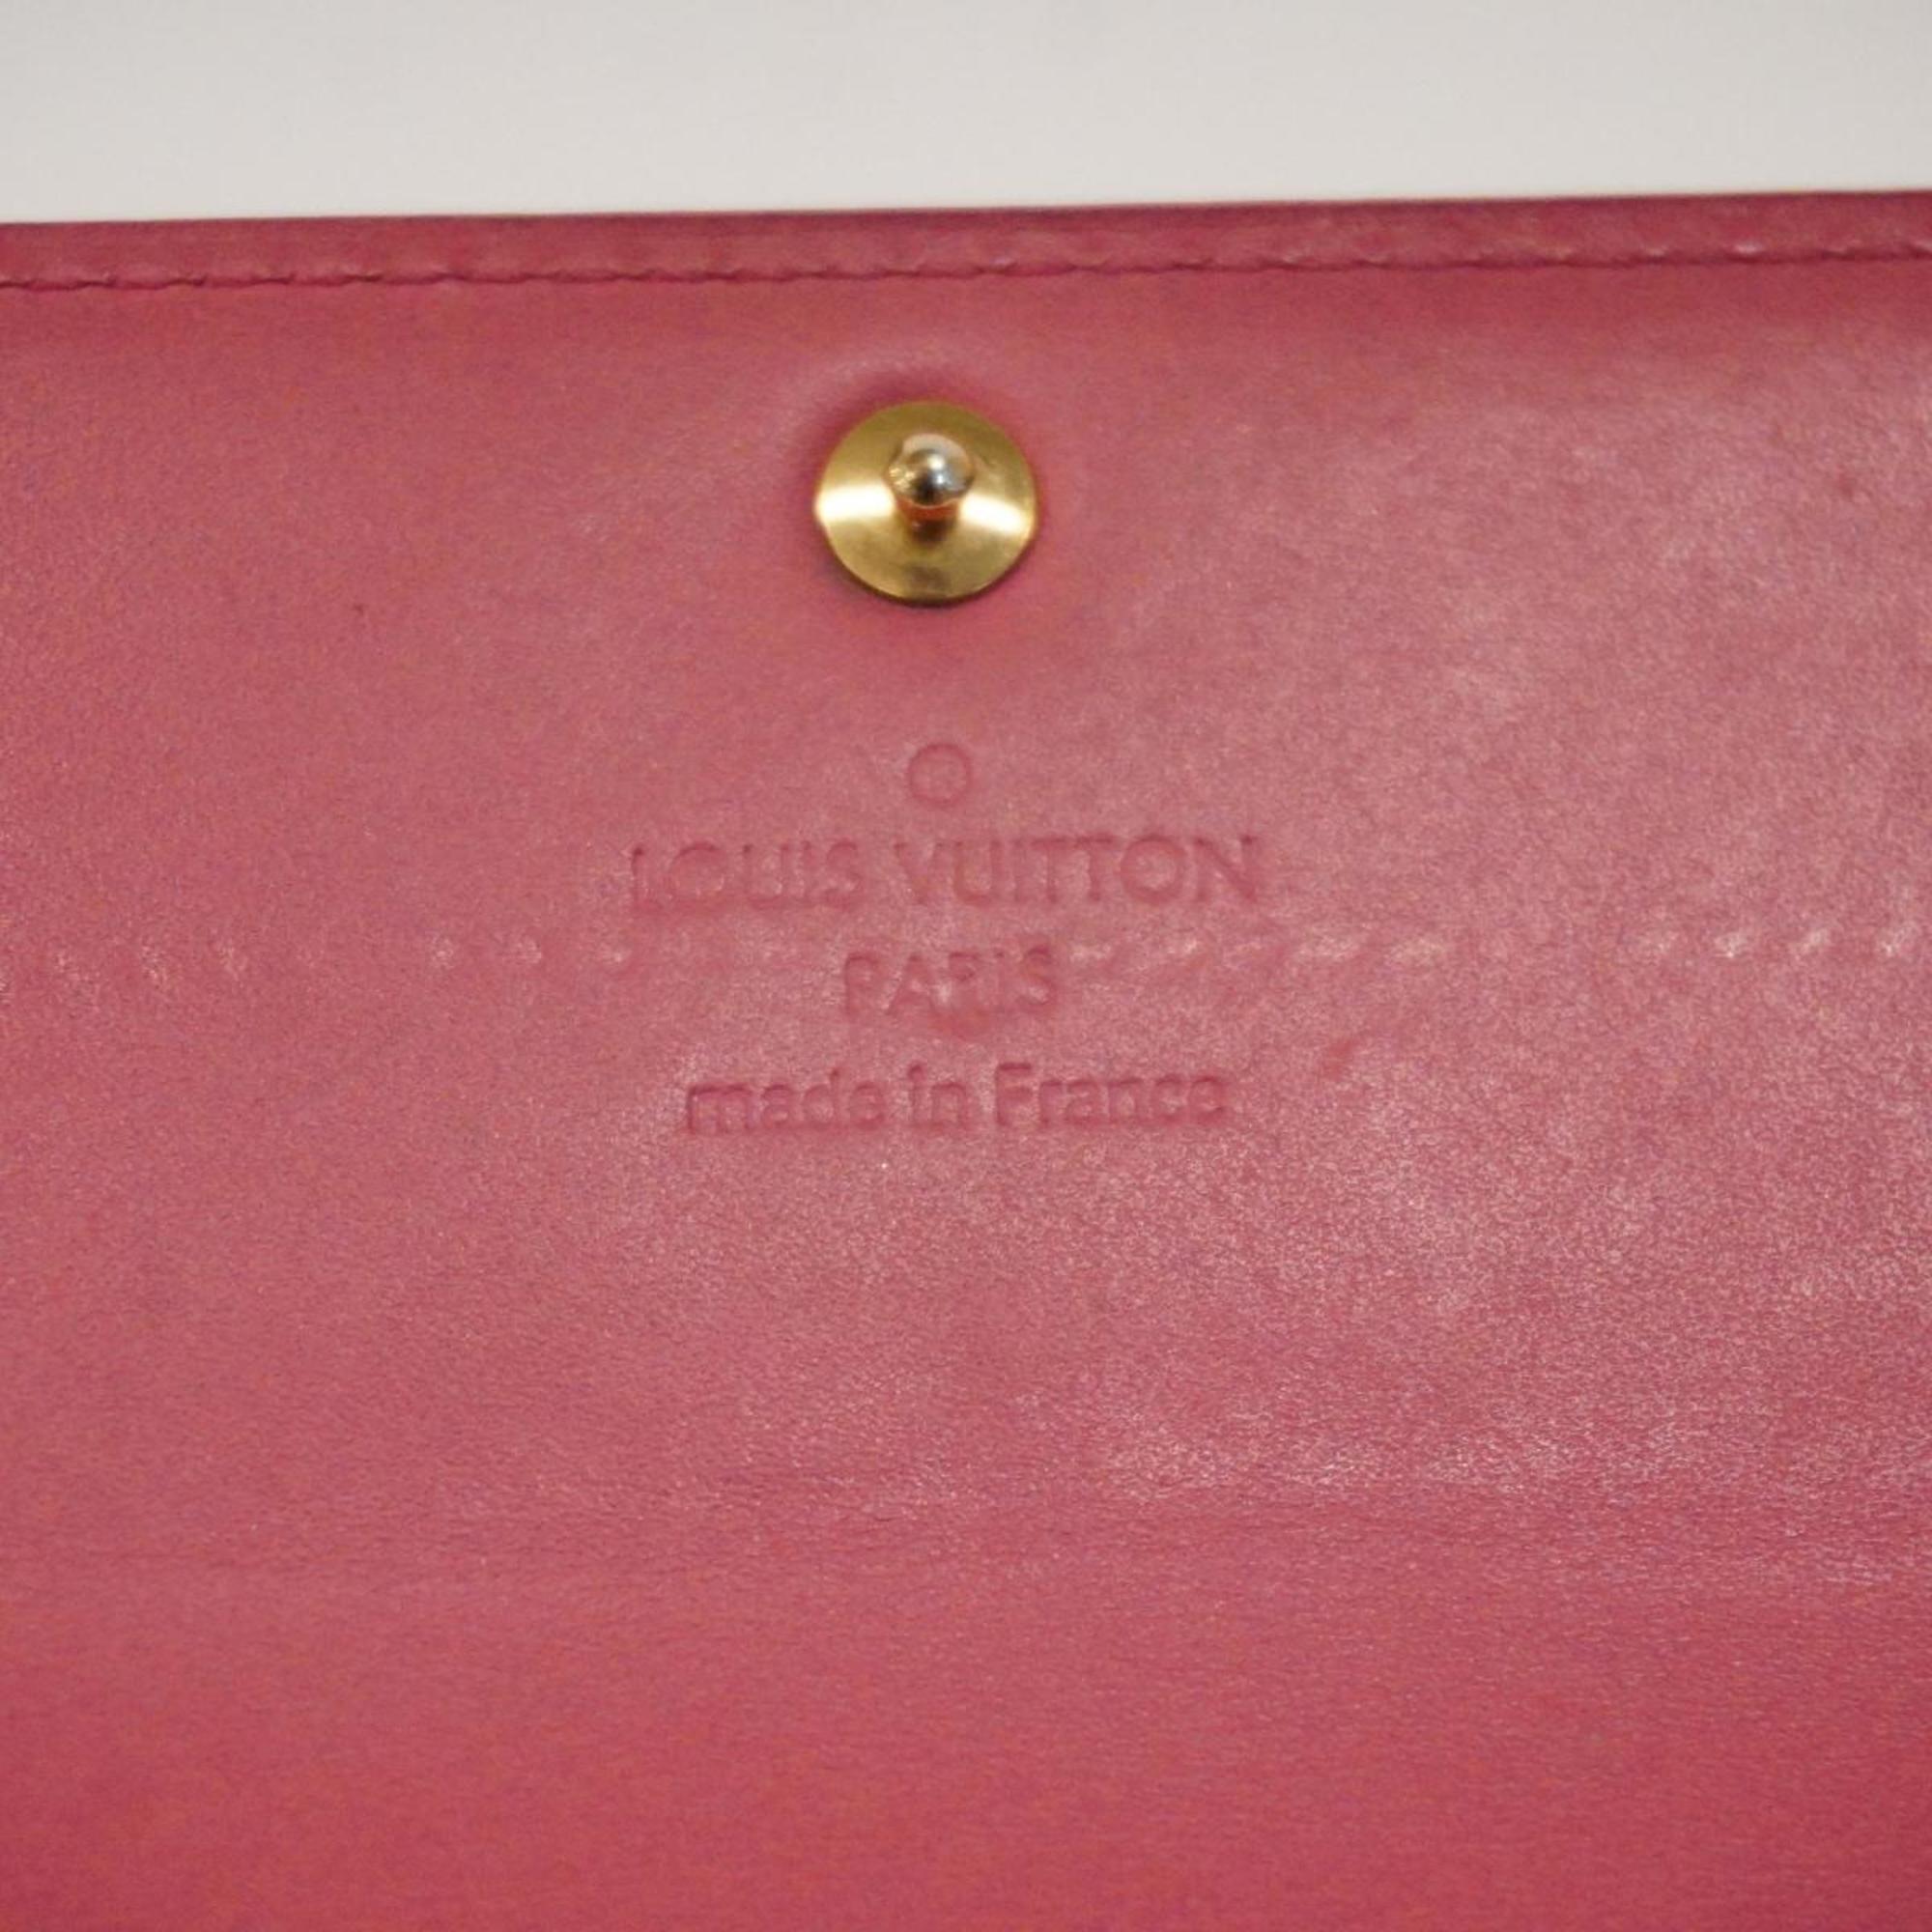 Louis Vuitton Long Wallet Vernis Portefeuille Sarah M9140F Framboise Ladies